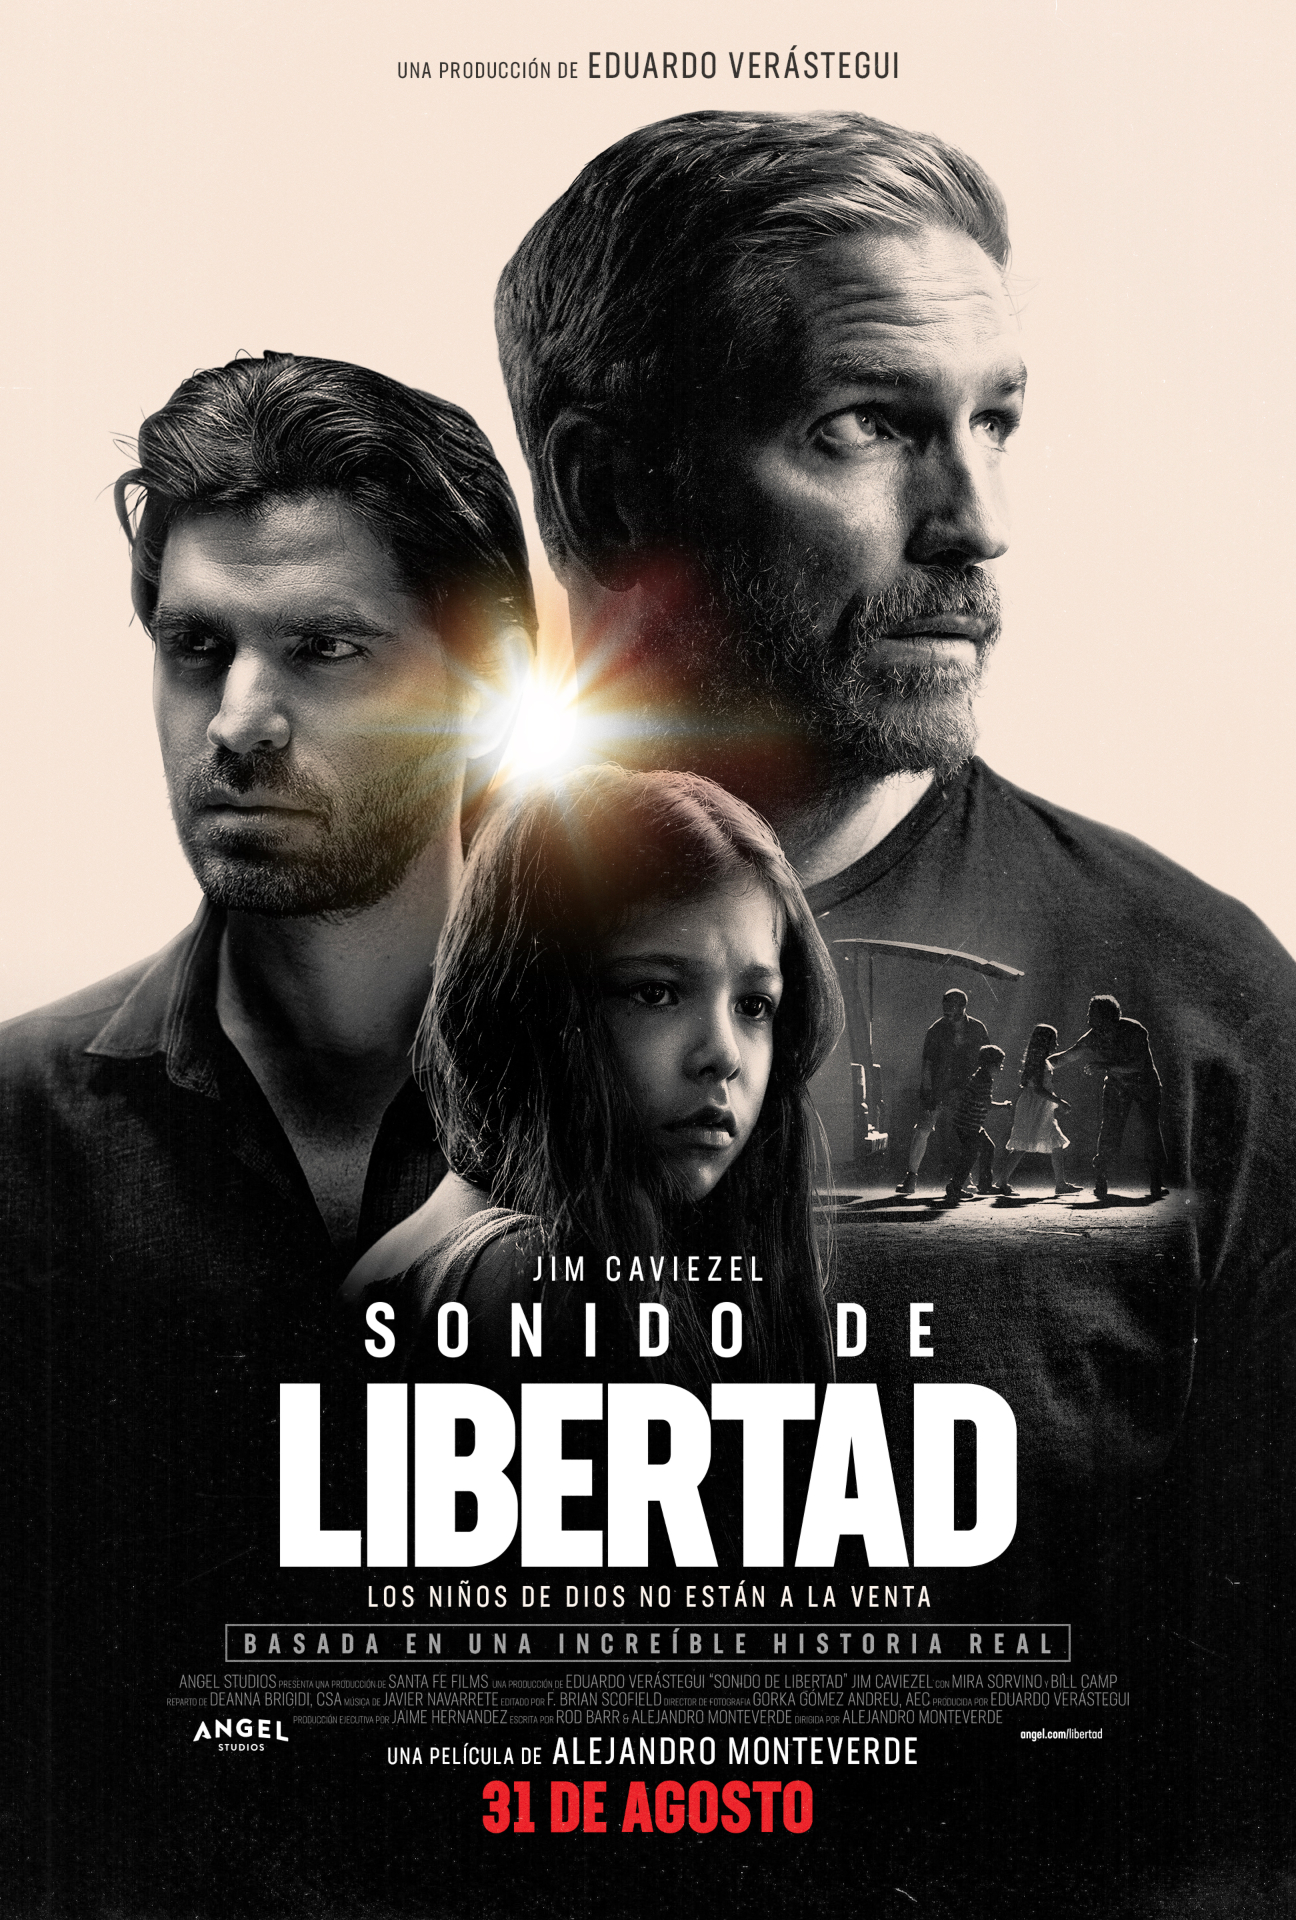 Póster Sonido de libertad estreno 31 de agosto en cines